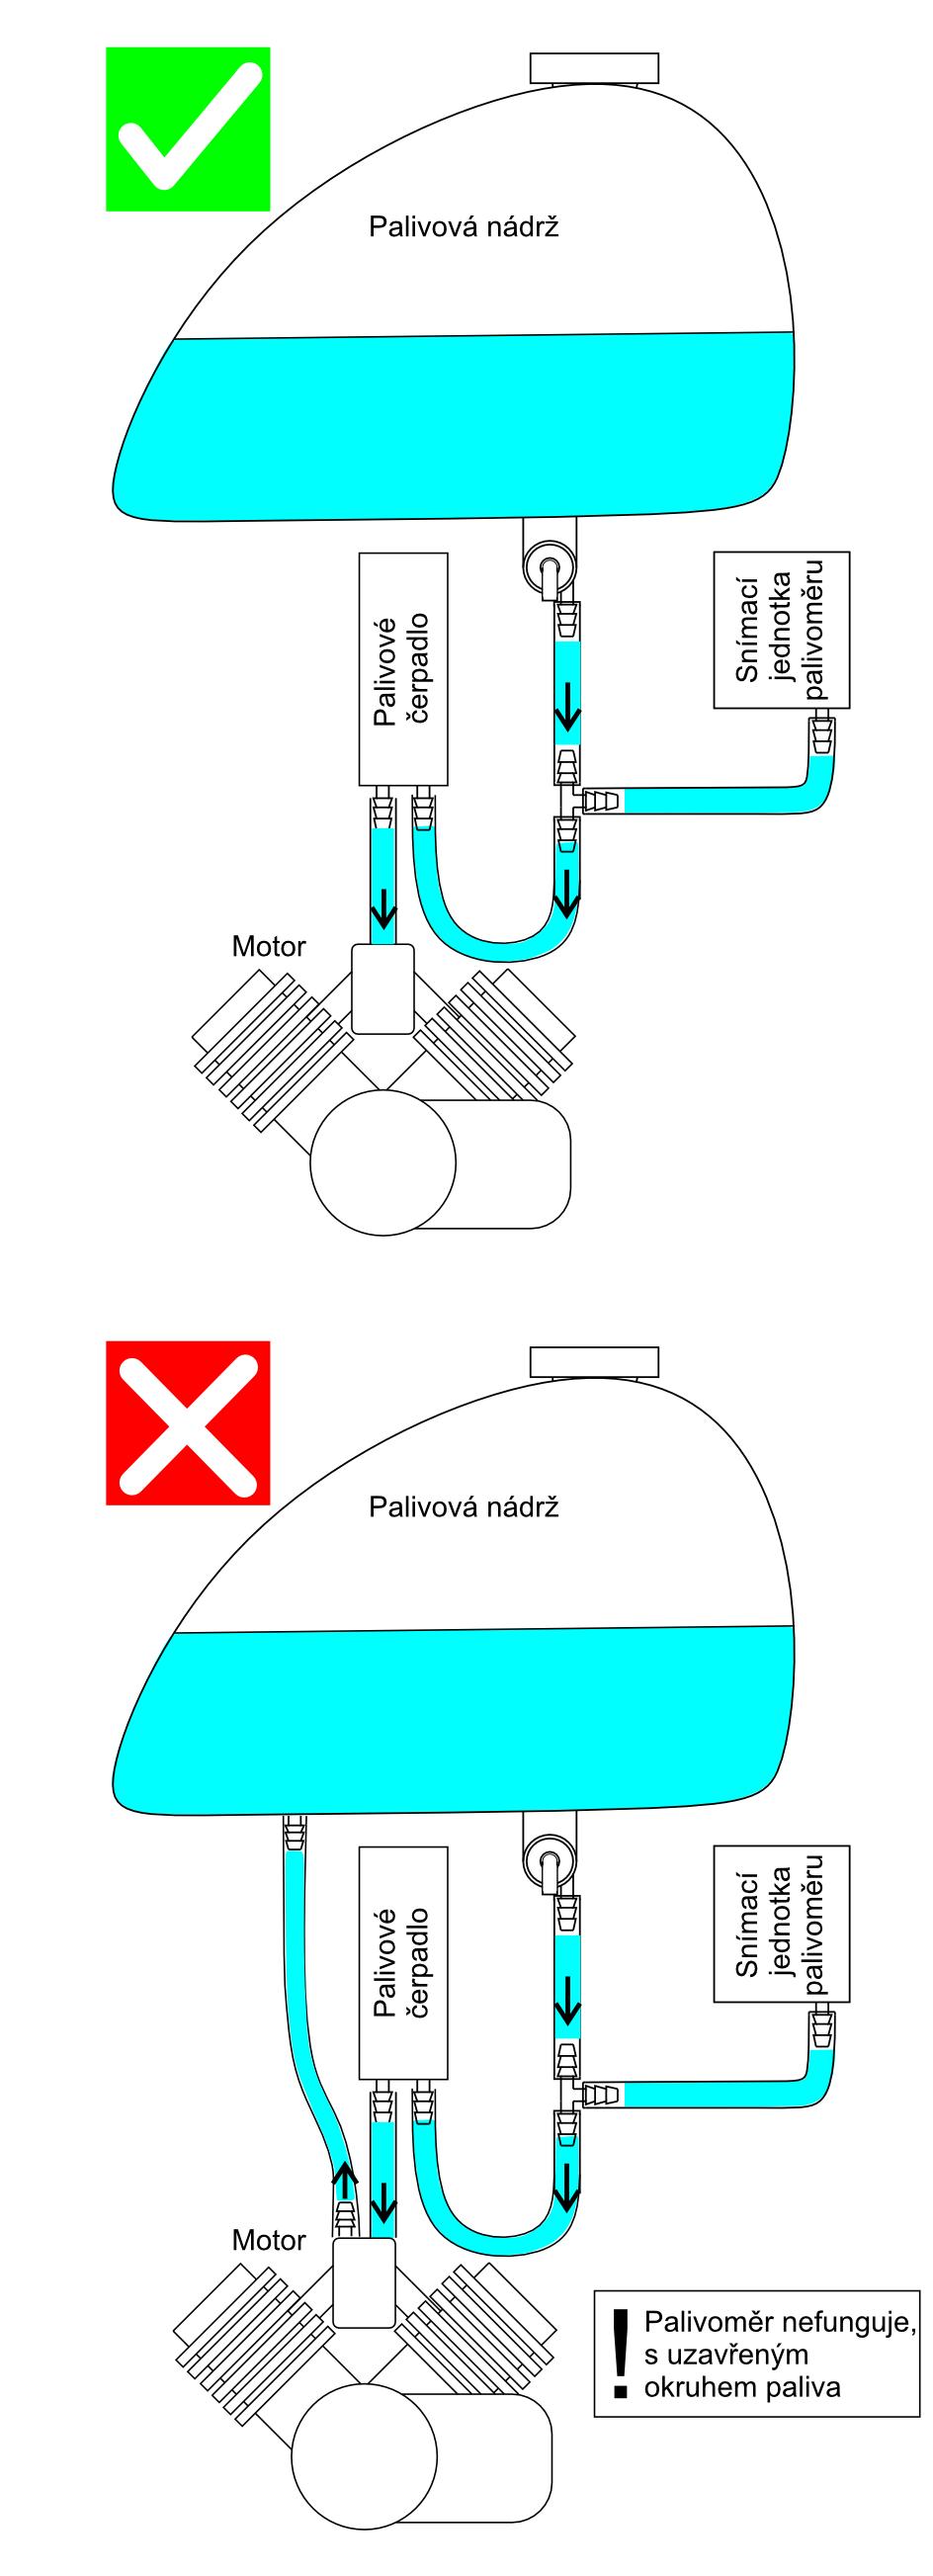 Omezené použití (palivová čerpadla) Palivové čerpadlo: Čerpadlo mimo nádrž: Odvětrávání nádrže: